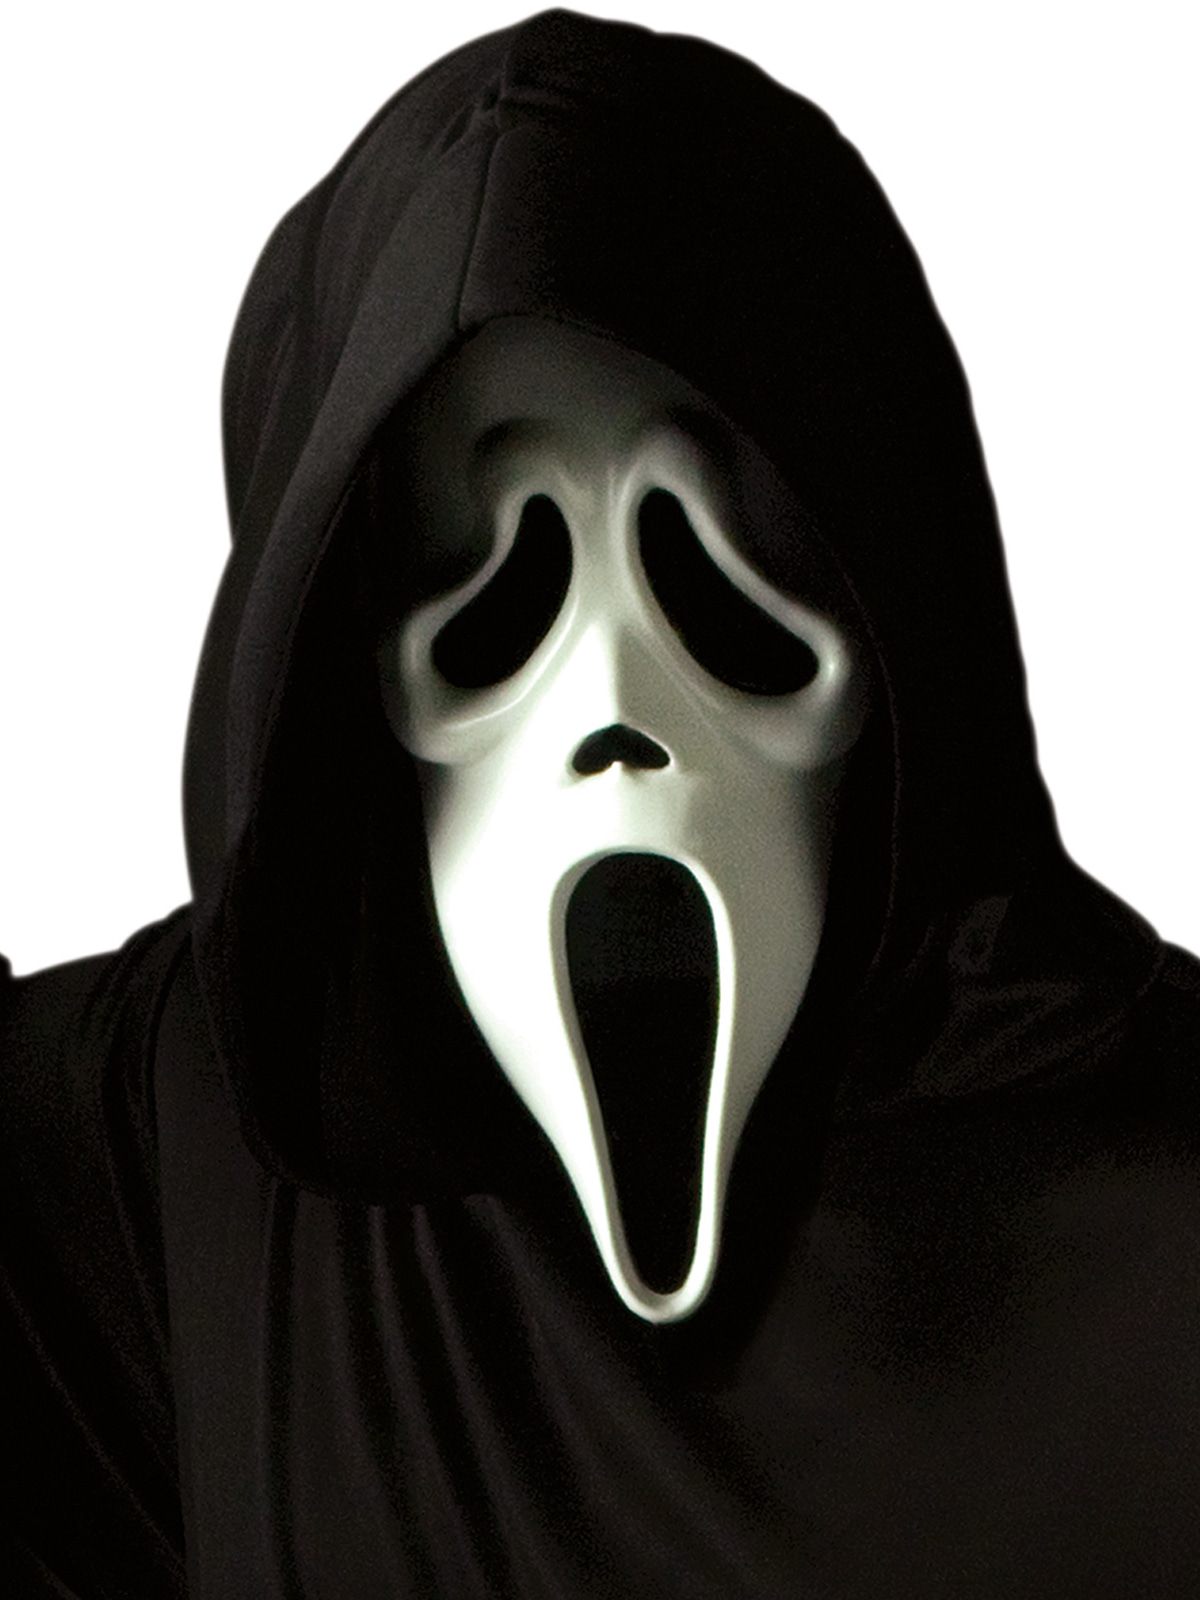 Verlosung zum Start von "Scream": Jetzt Kinotickets und Masken gewinnen!